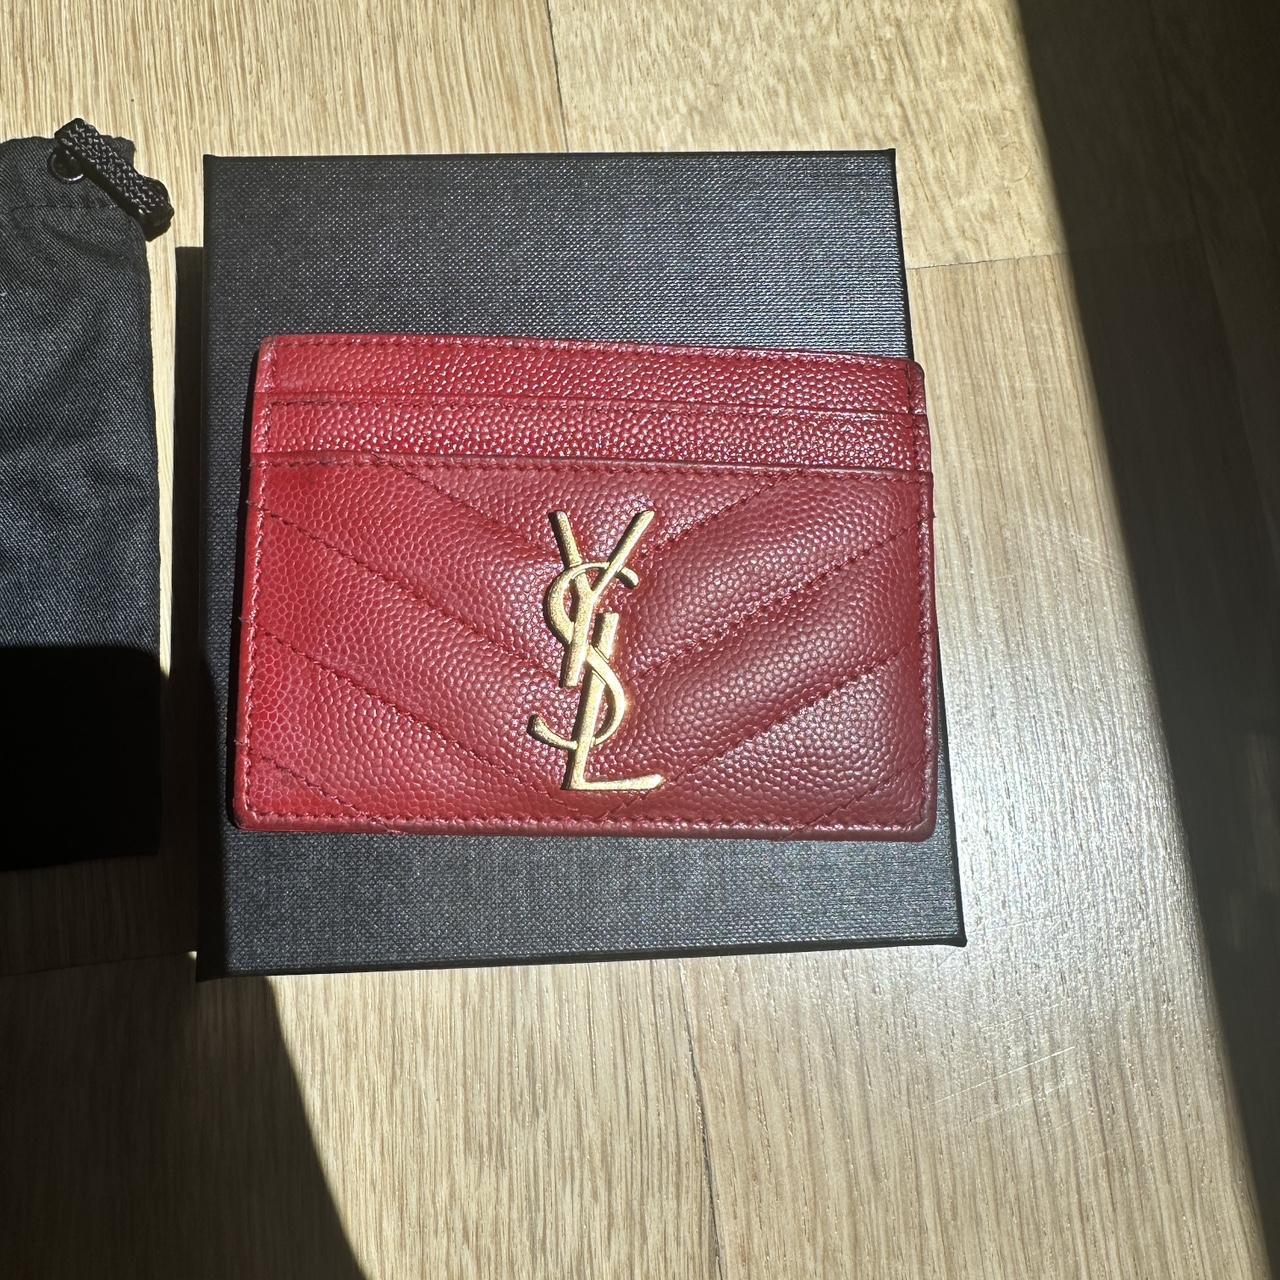 Yves Saint Laurent Women's Cardholders - Red